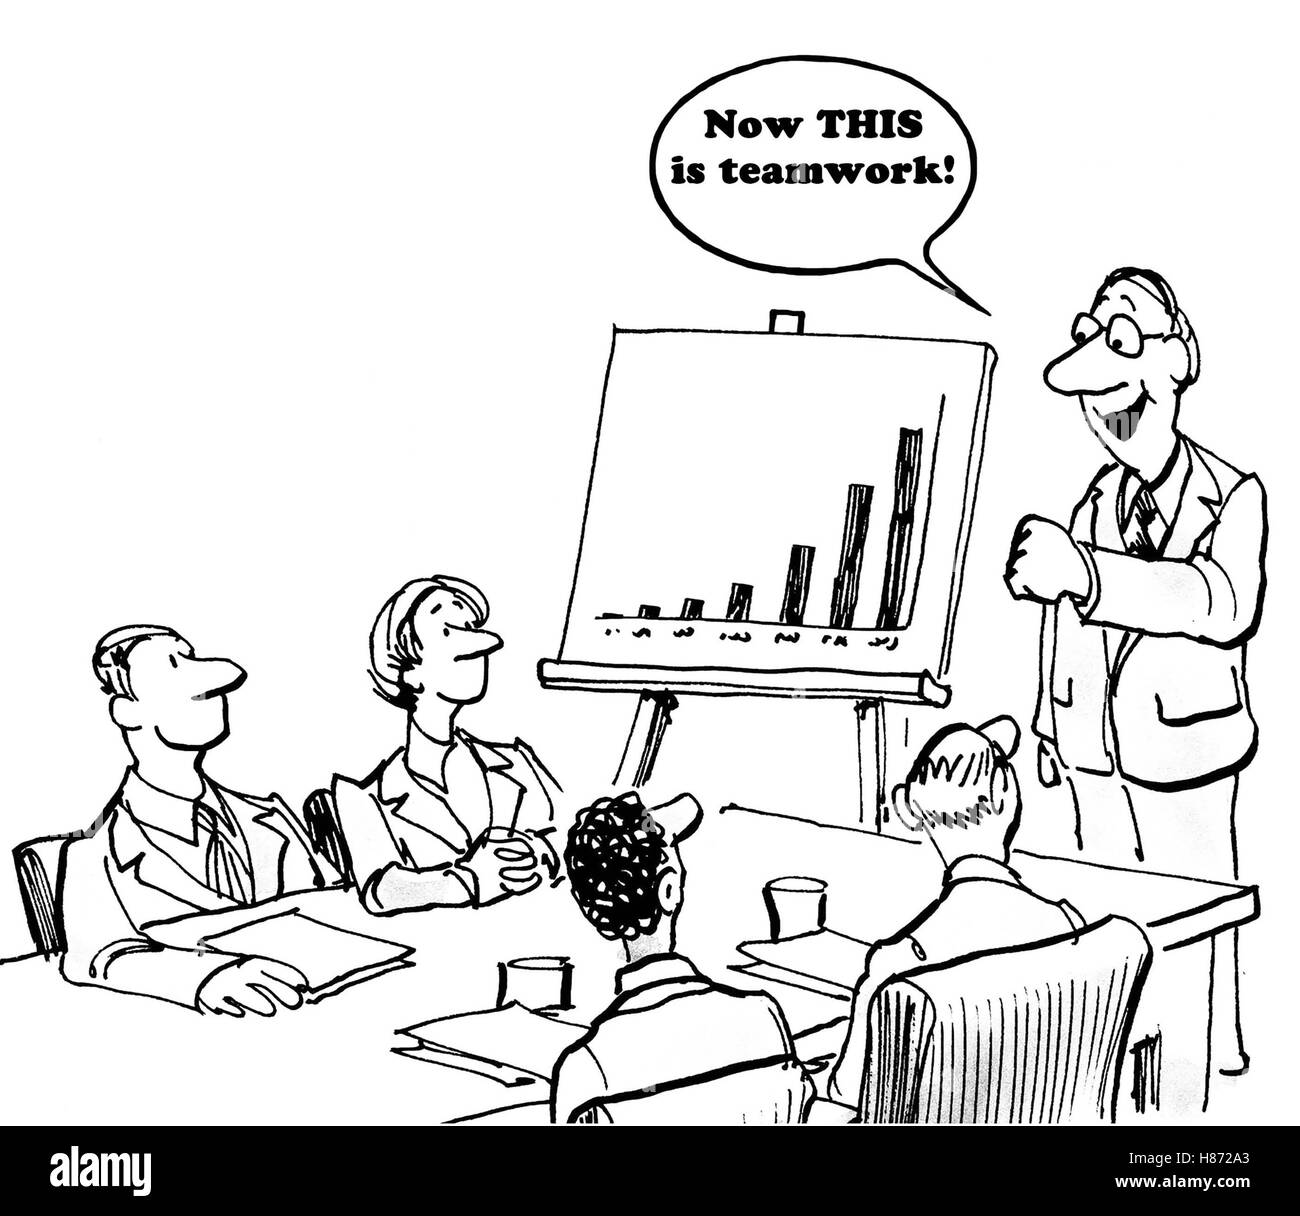 Schwarz / weiß Geschäft Cartoon zeigt eine Diagramm mit mehr Umsatz und Chef sagen, ein team, "jetzt ist das Teamwork". Stockfoto